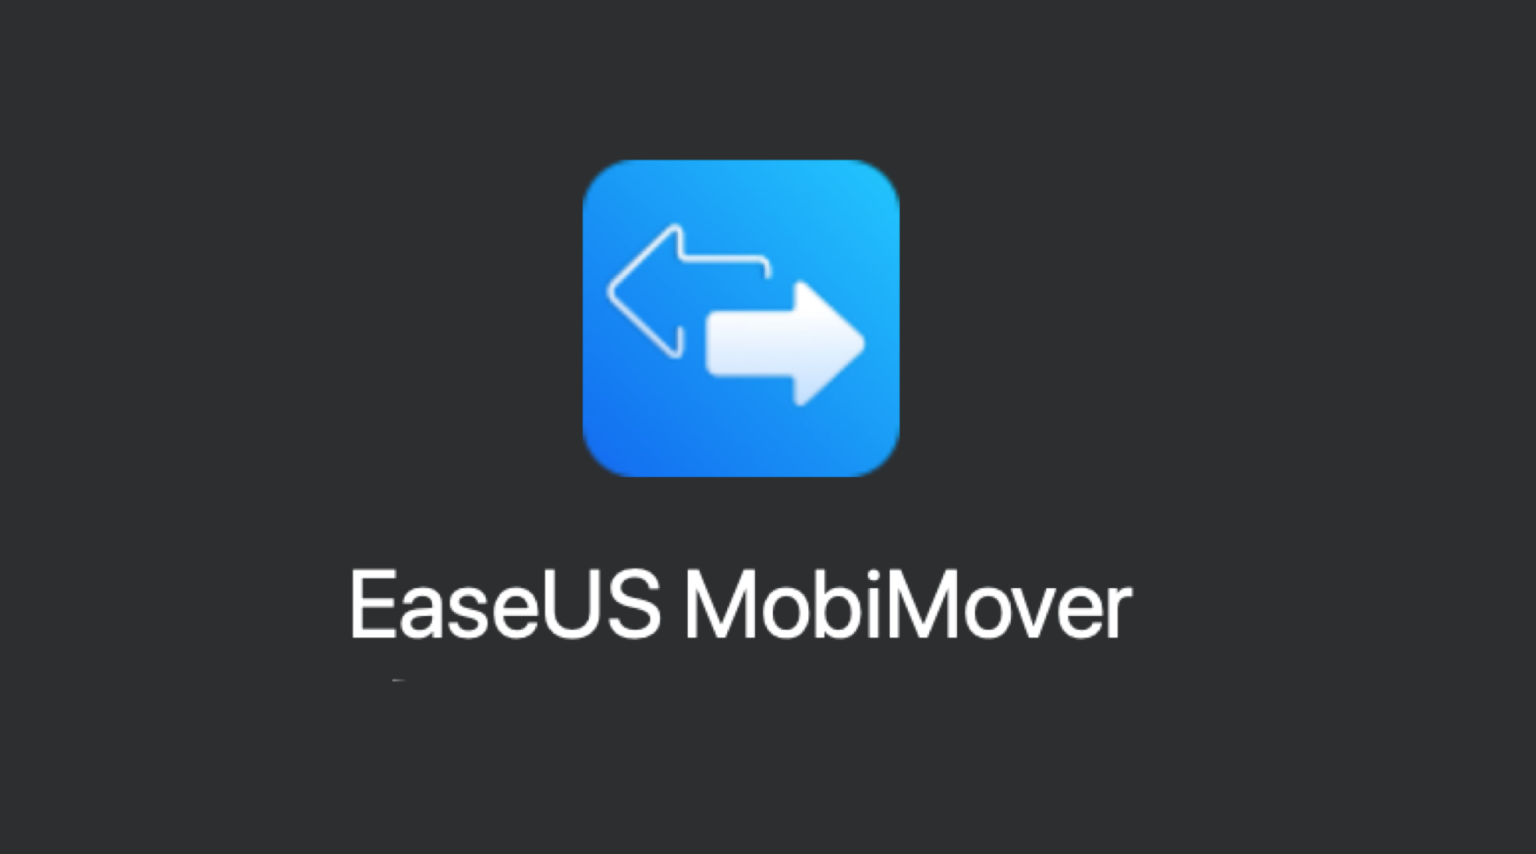 easeus mobimover free 4.5